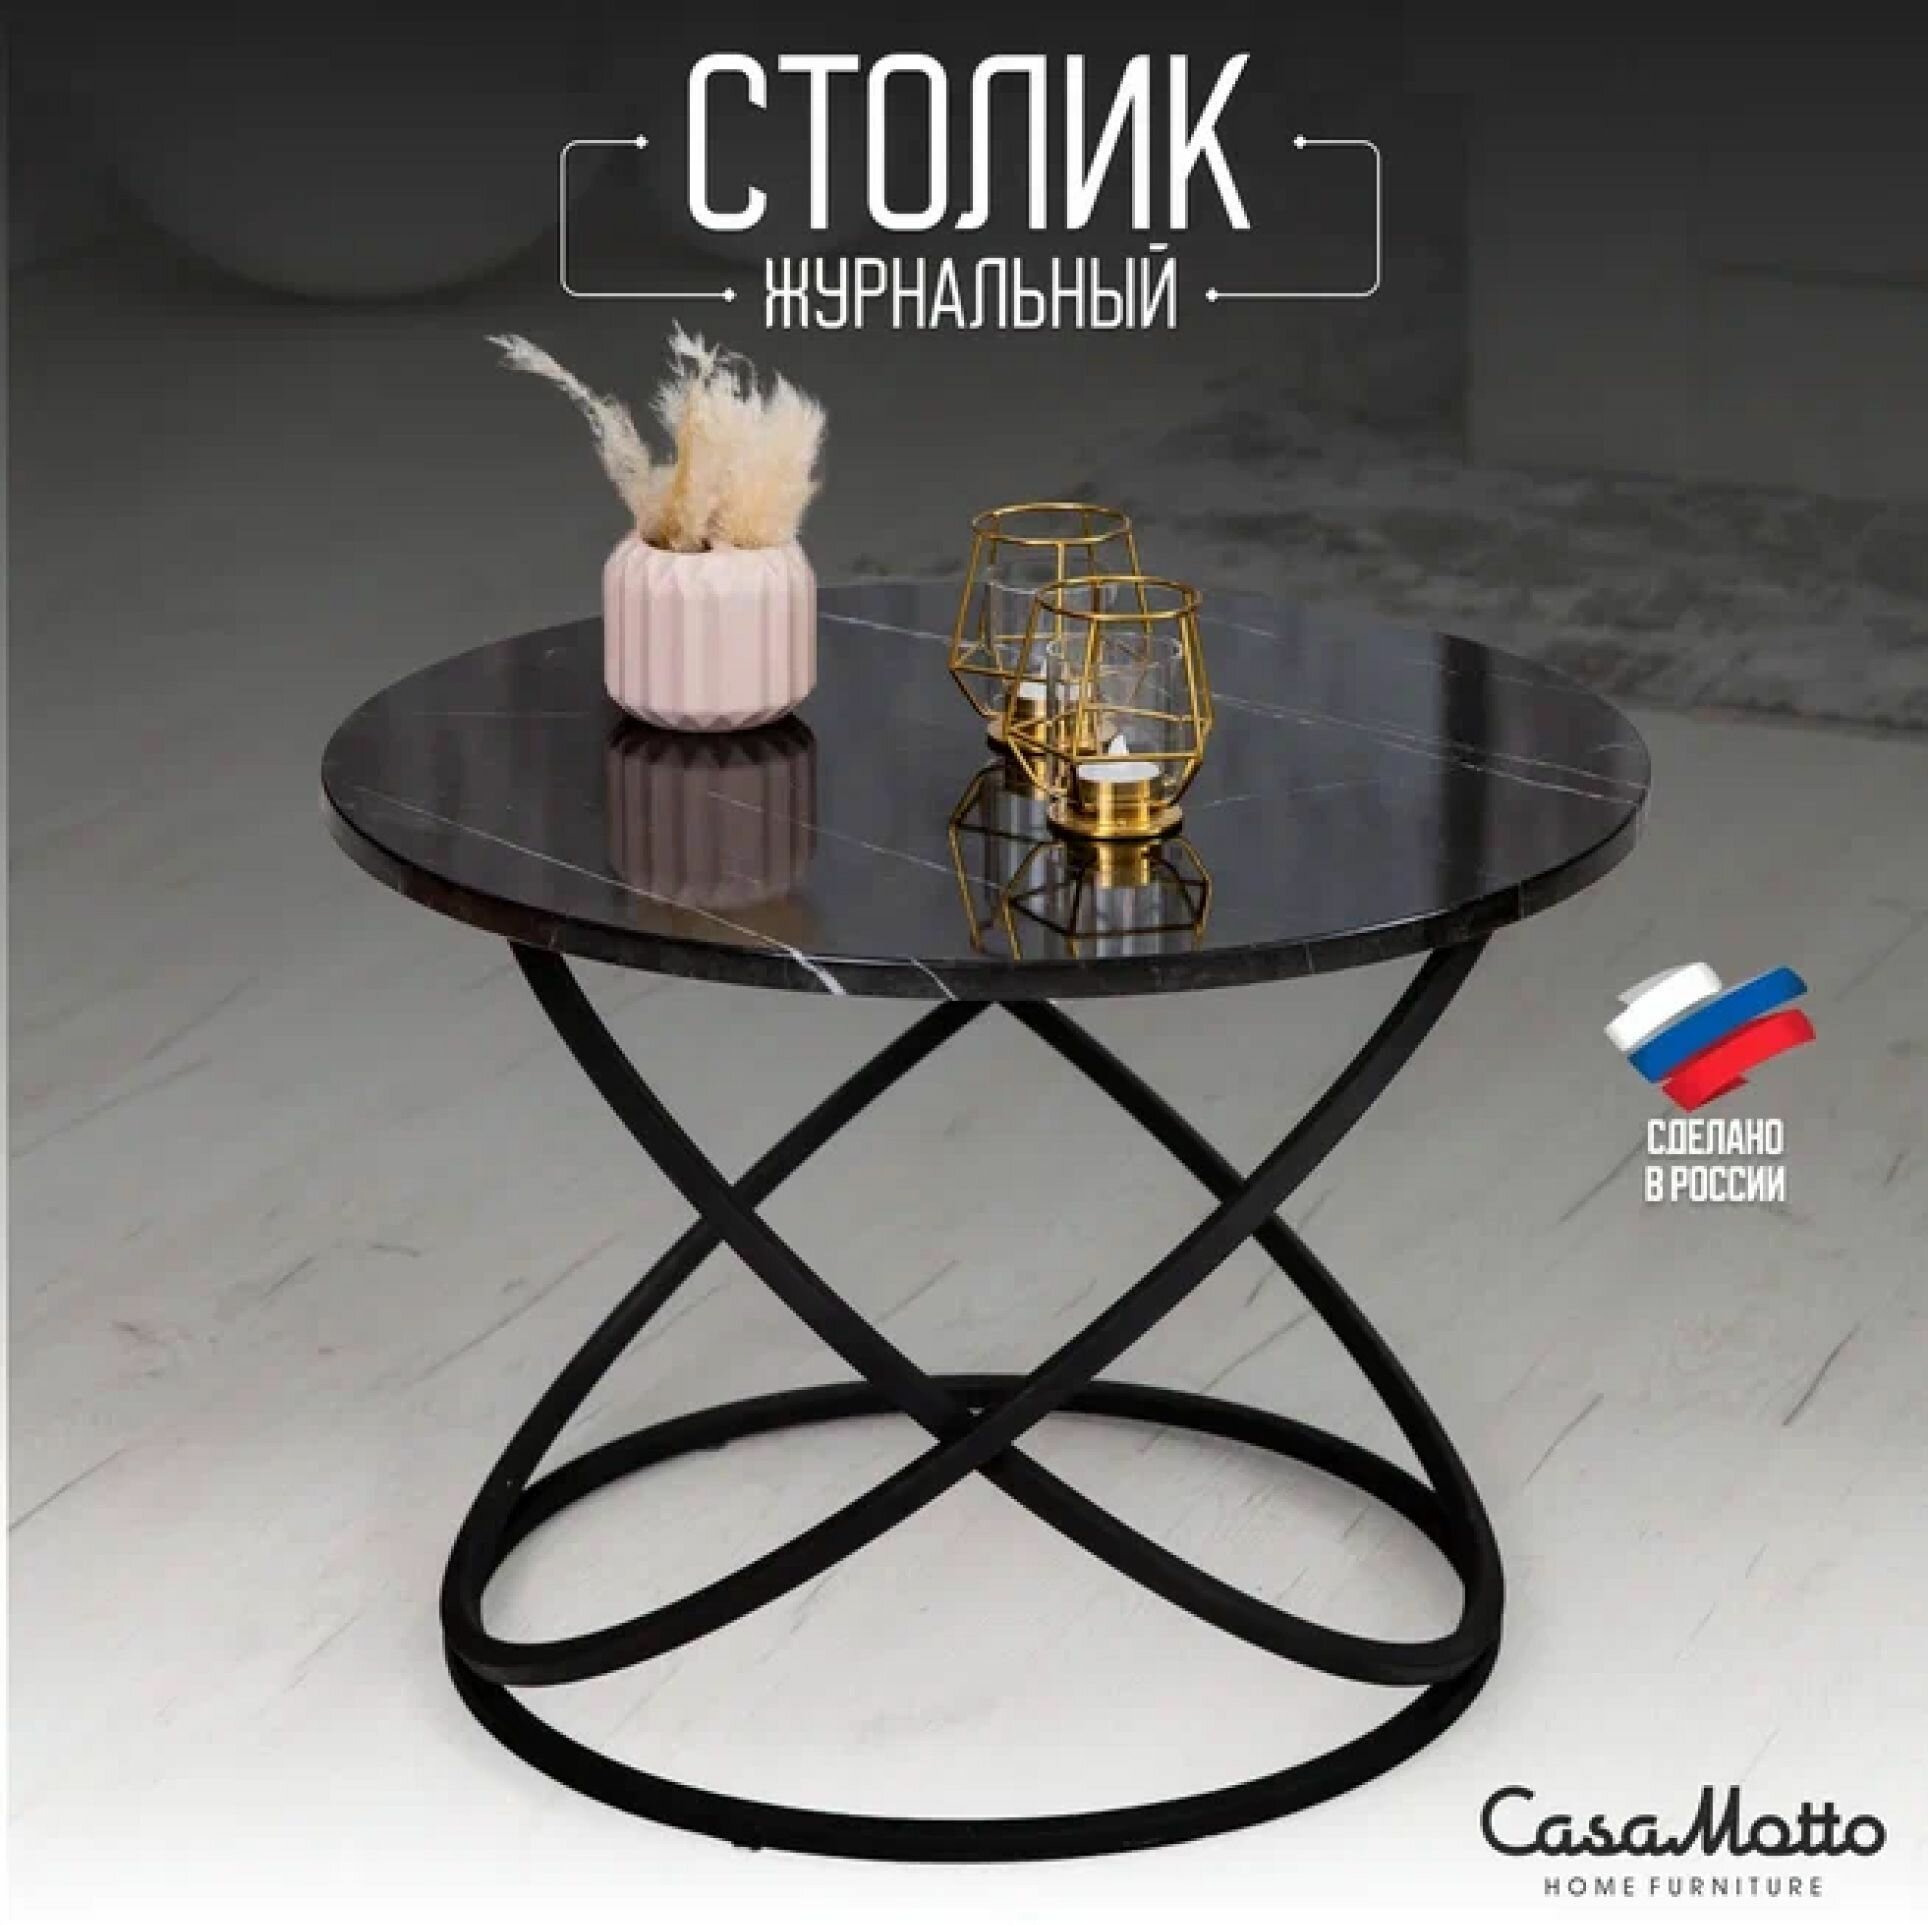 Журнальный круглый стол CasaMotto 60x60x45 см прикроватный, цвет - черный мрамор глянцевый, кофейный столик / в гостиную / спальню / офис